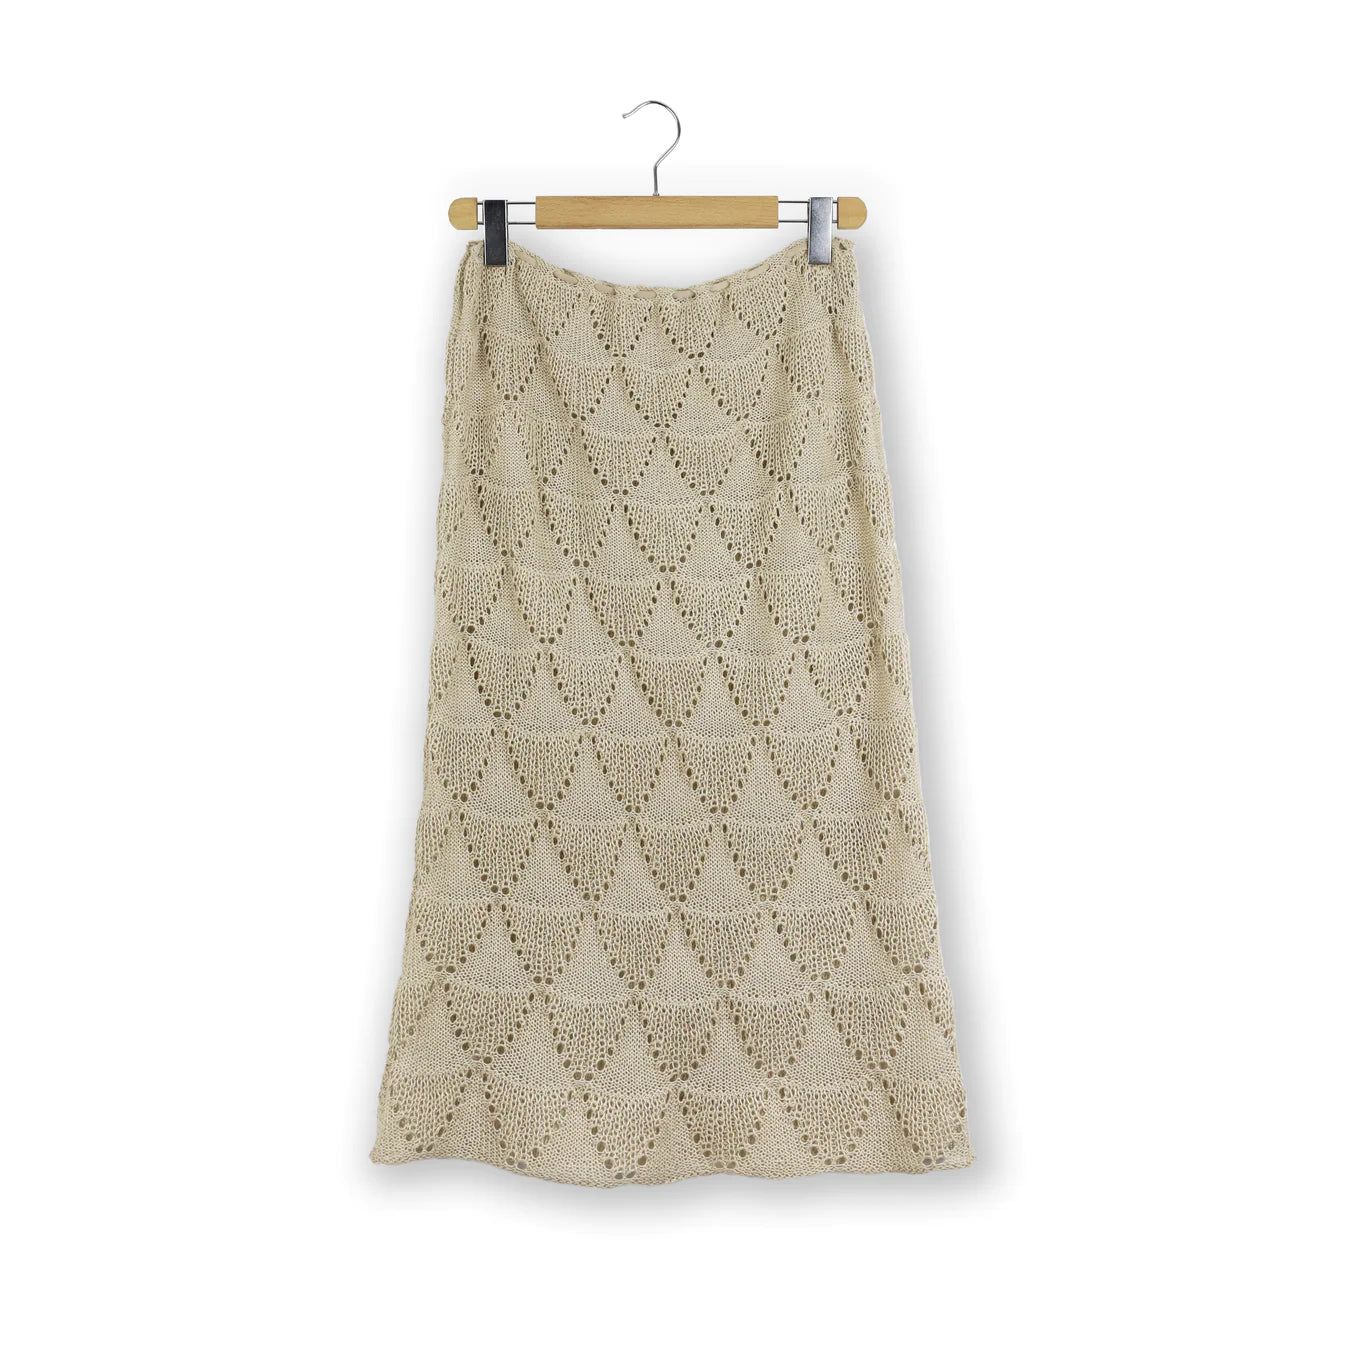 Garnpakke Seashell sæt - Isager Breeze kollektion af Knitthing